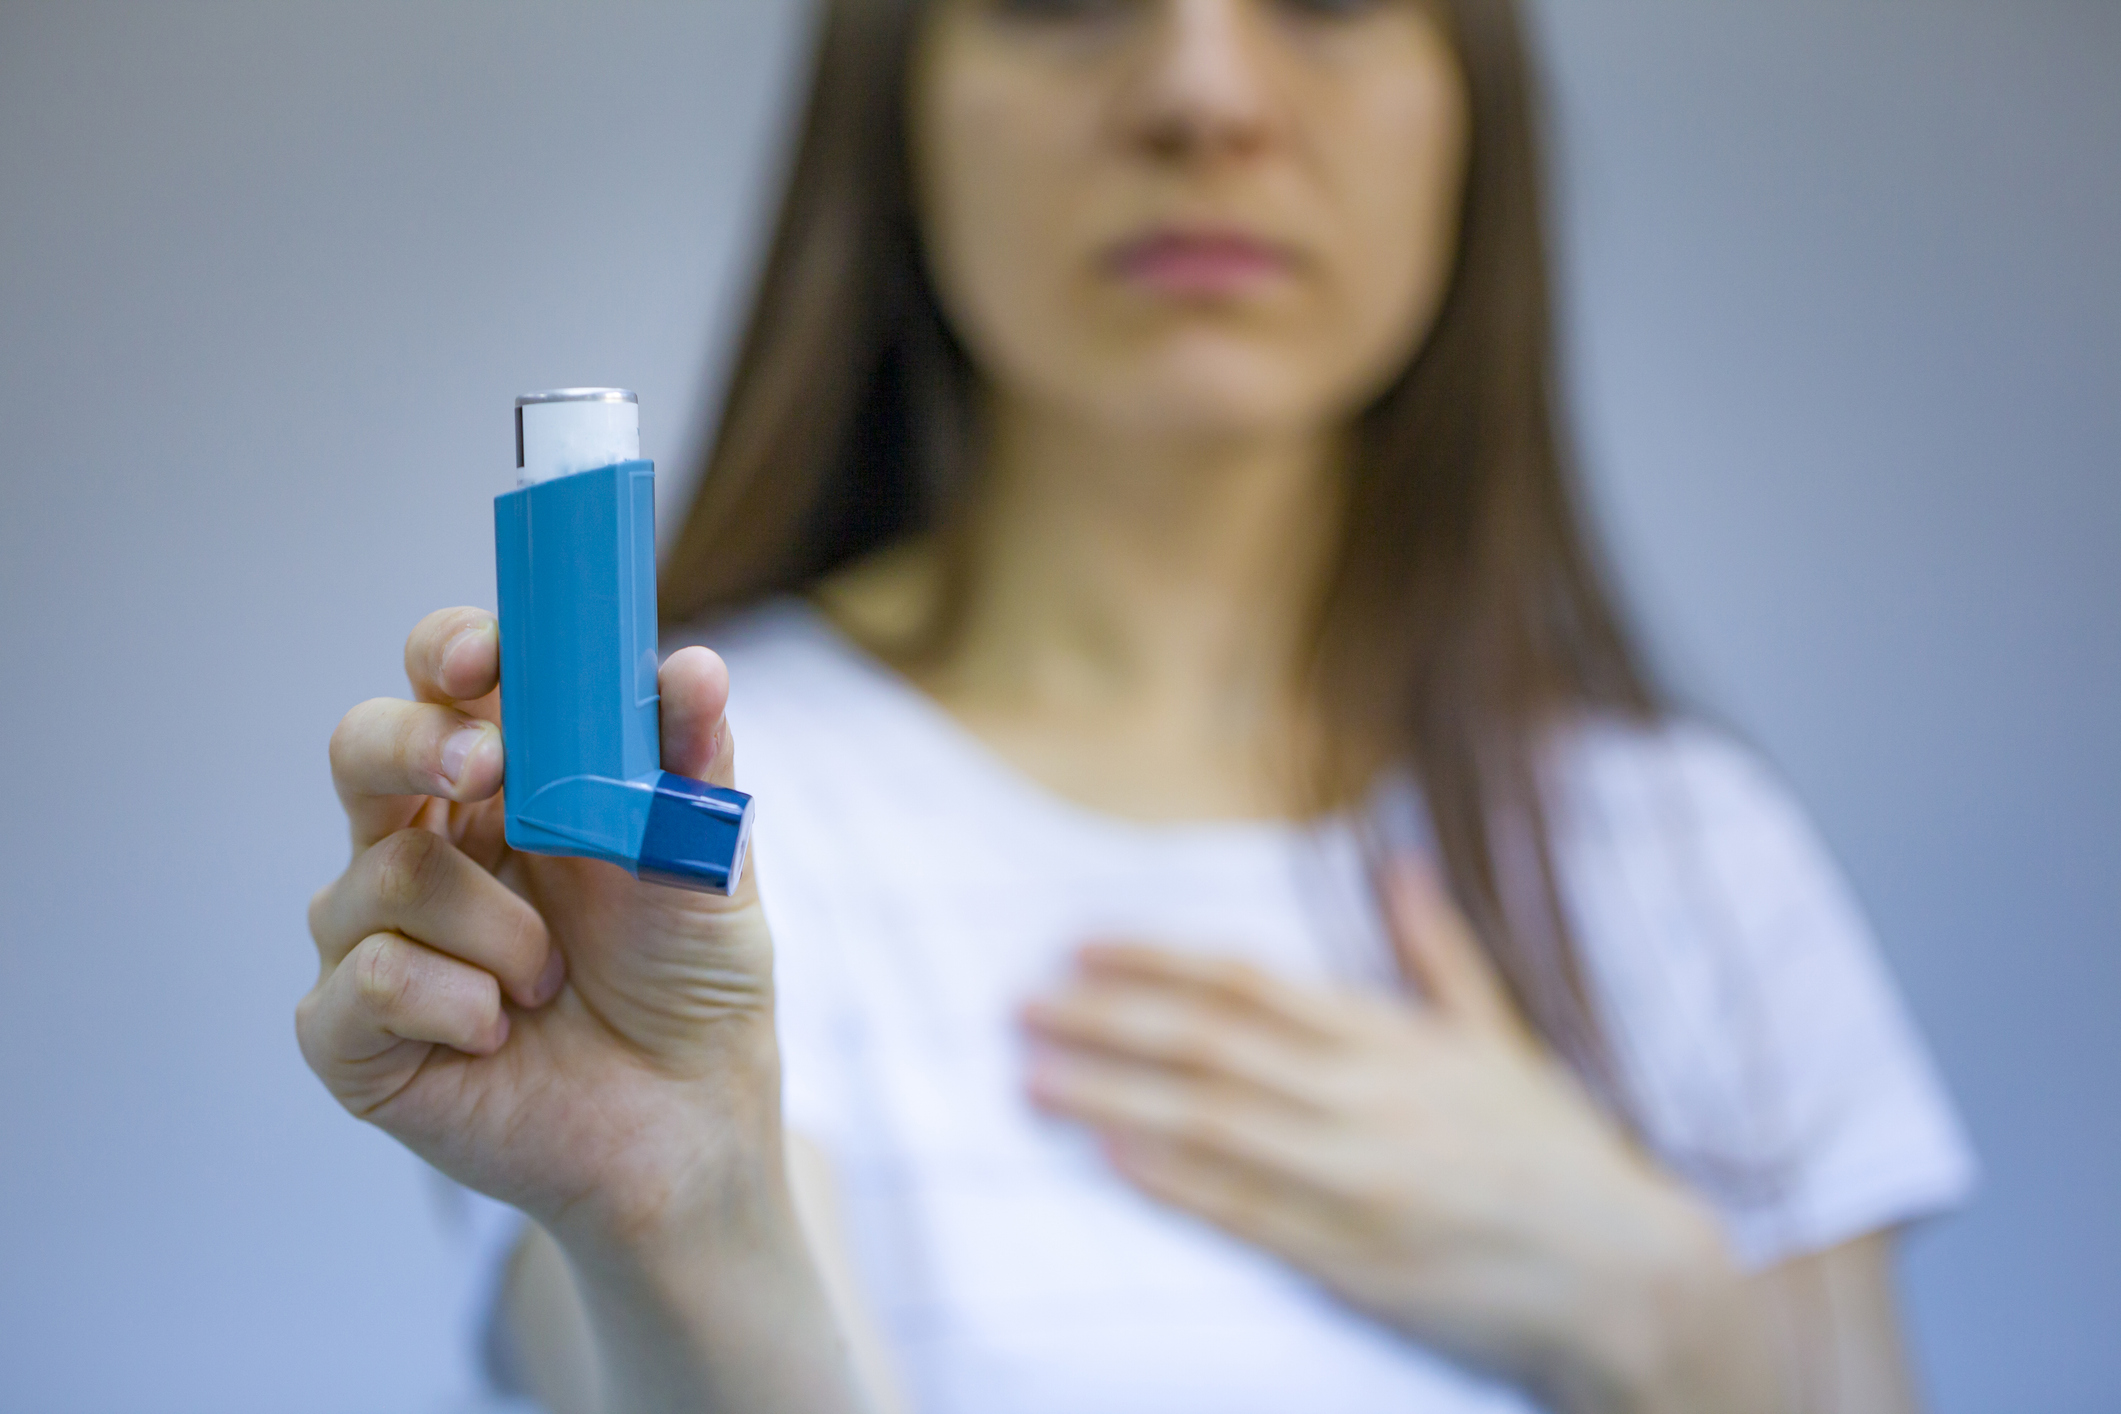 Atividade física pode melhorar controle de asma, segundo novo estudo